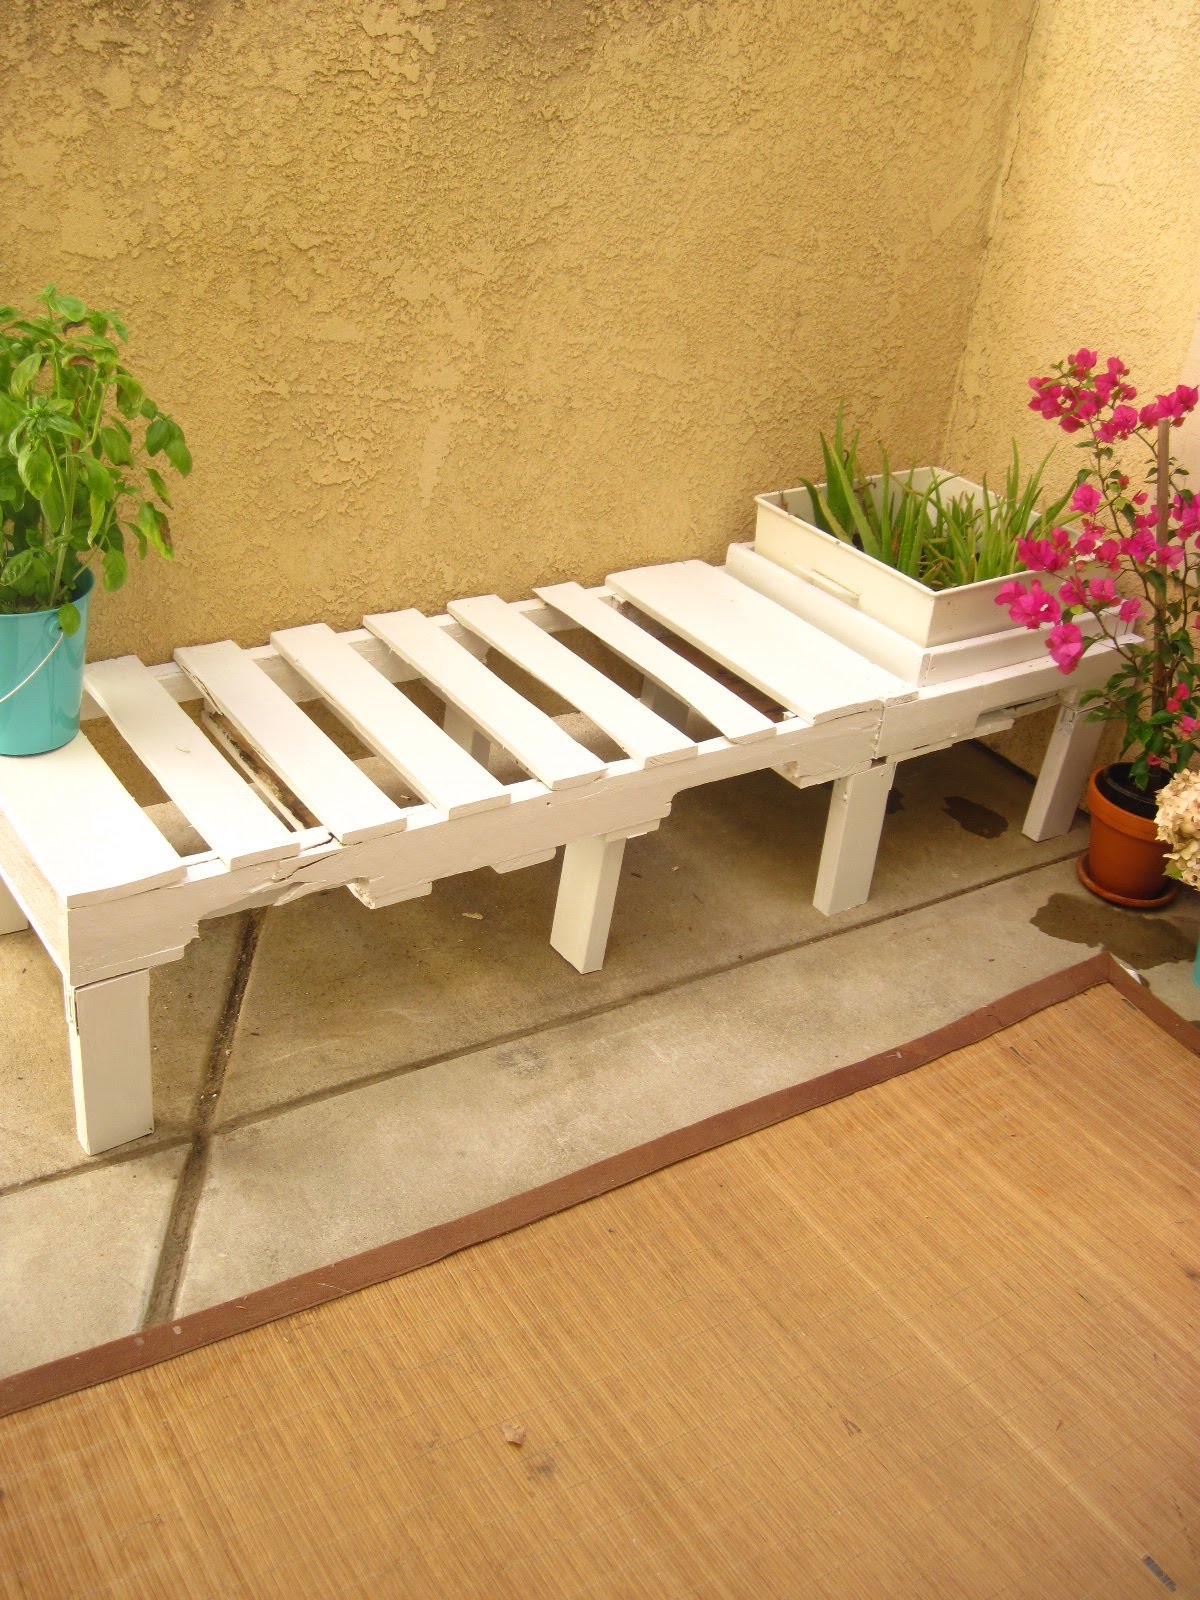 Home depot garden benches